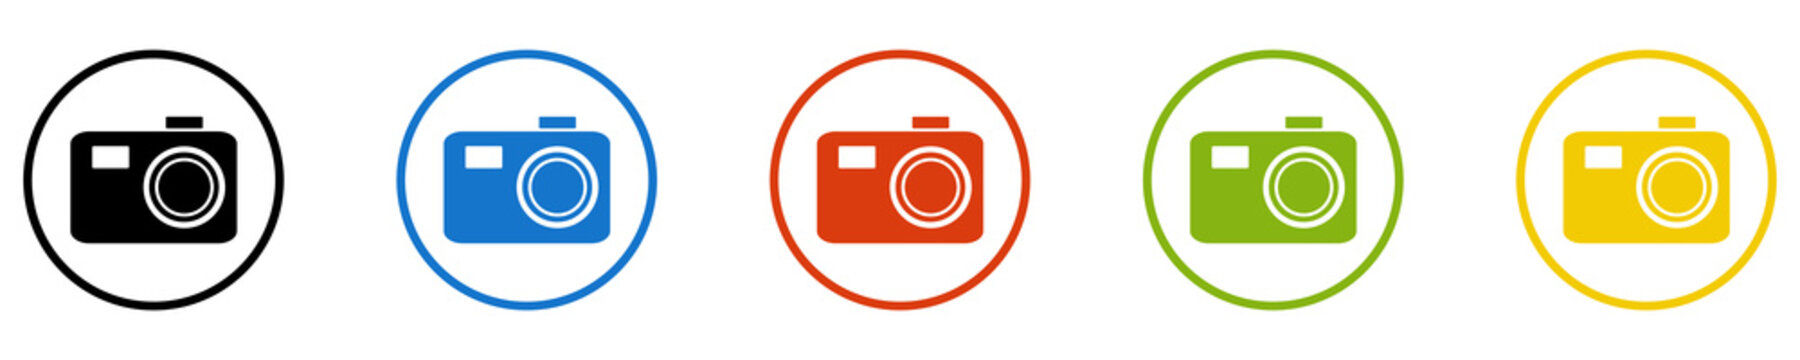 Bunter Banner mit 5 farbigen Icons: Fotos, Kamera, Fotoapparat, Fotograf oder Bilder